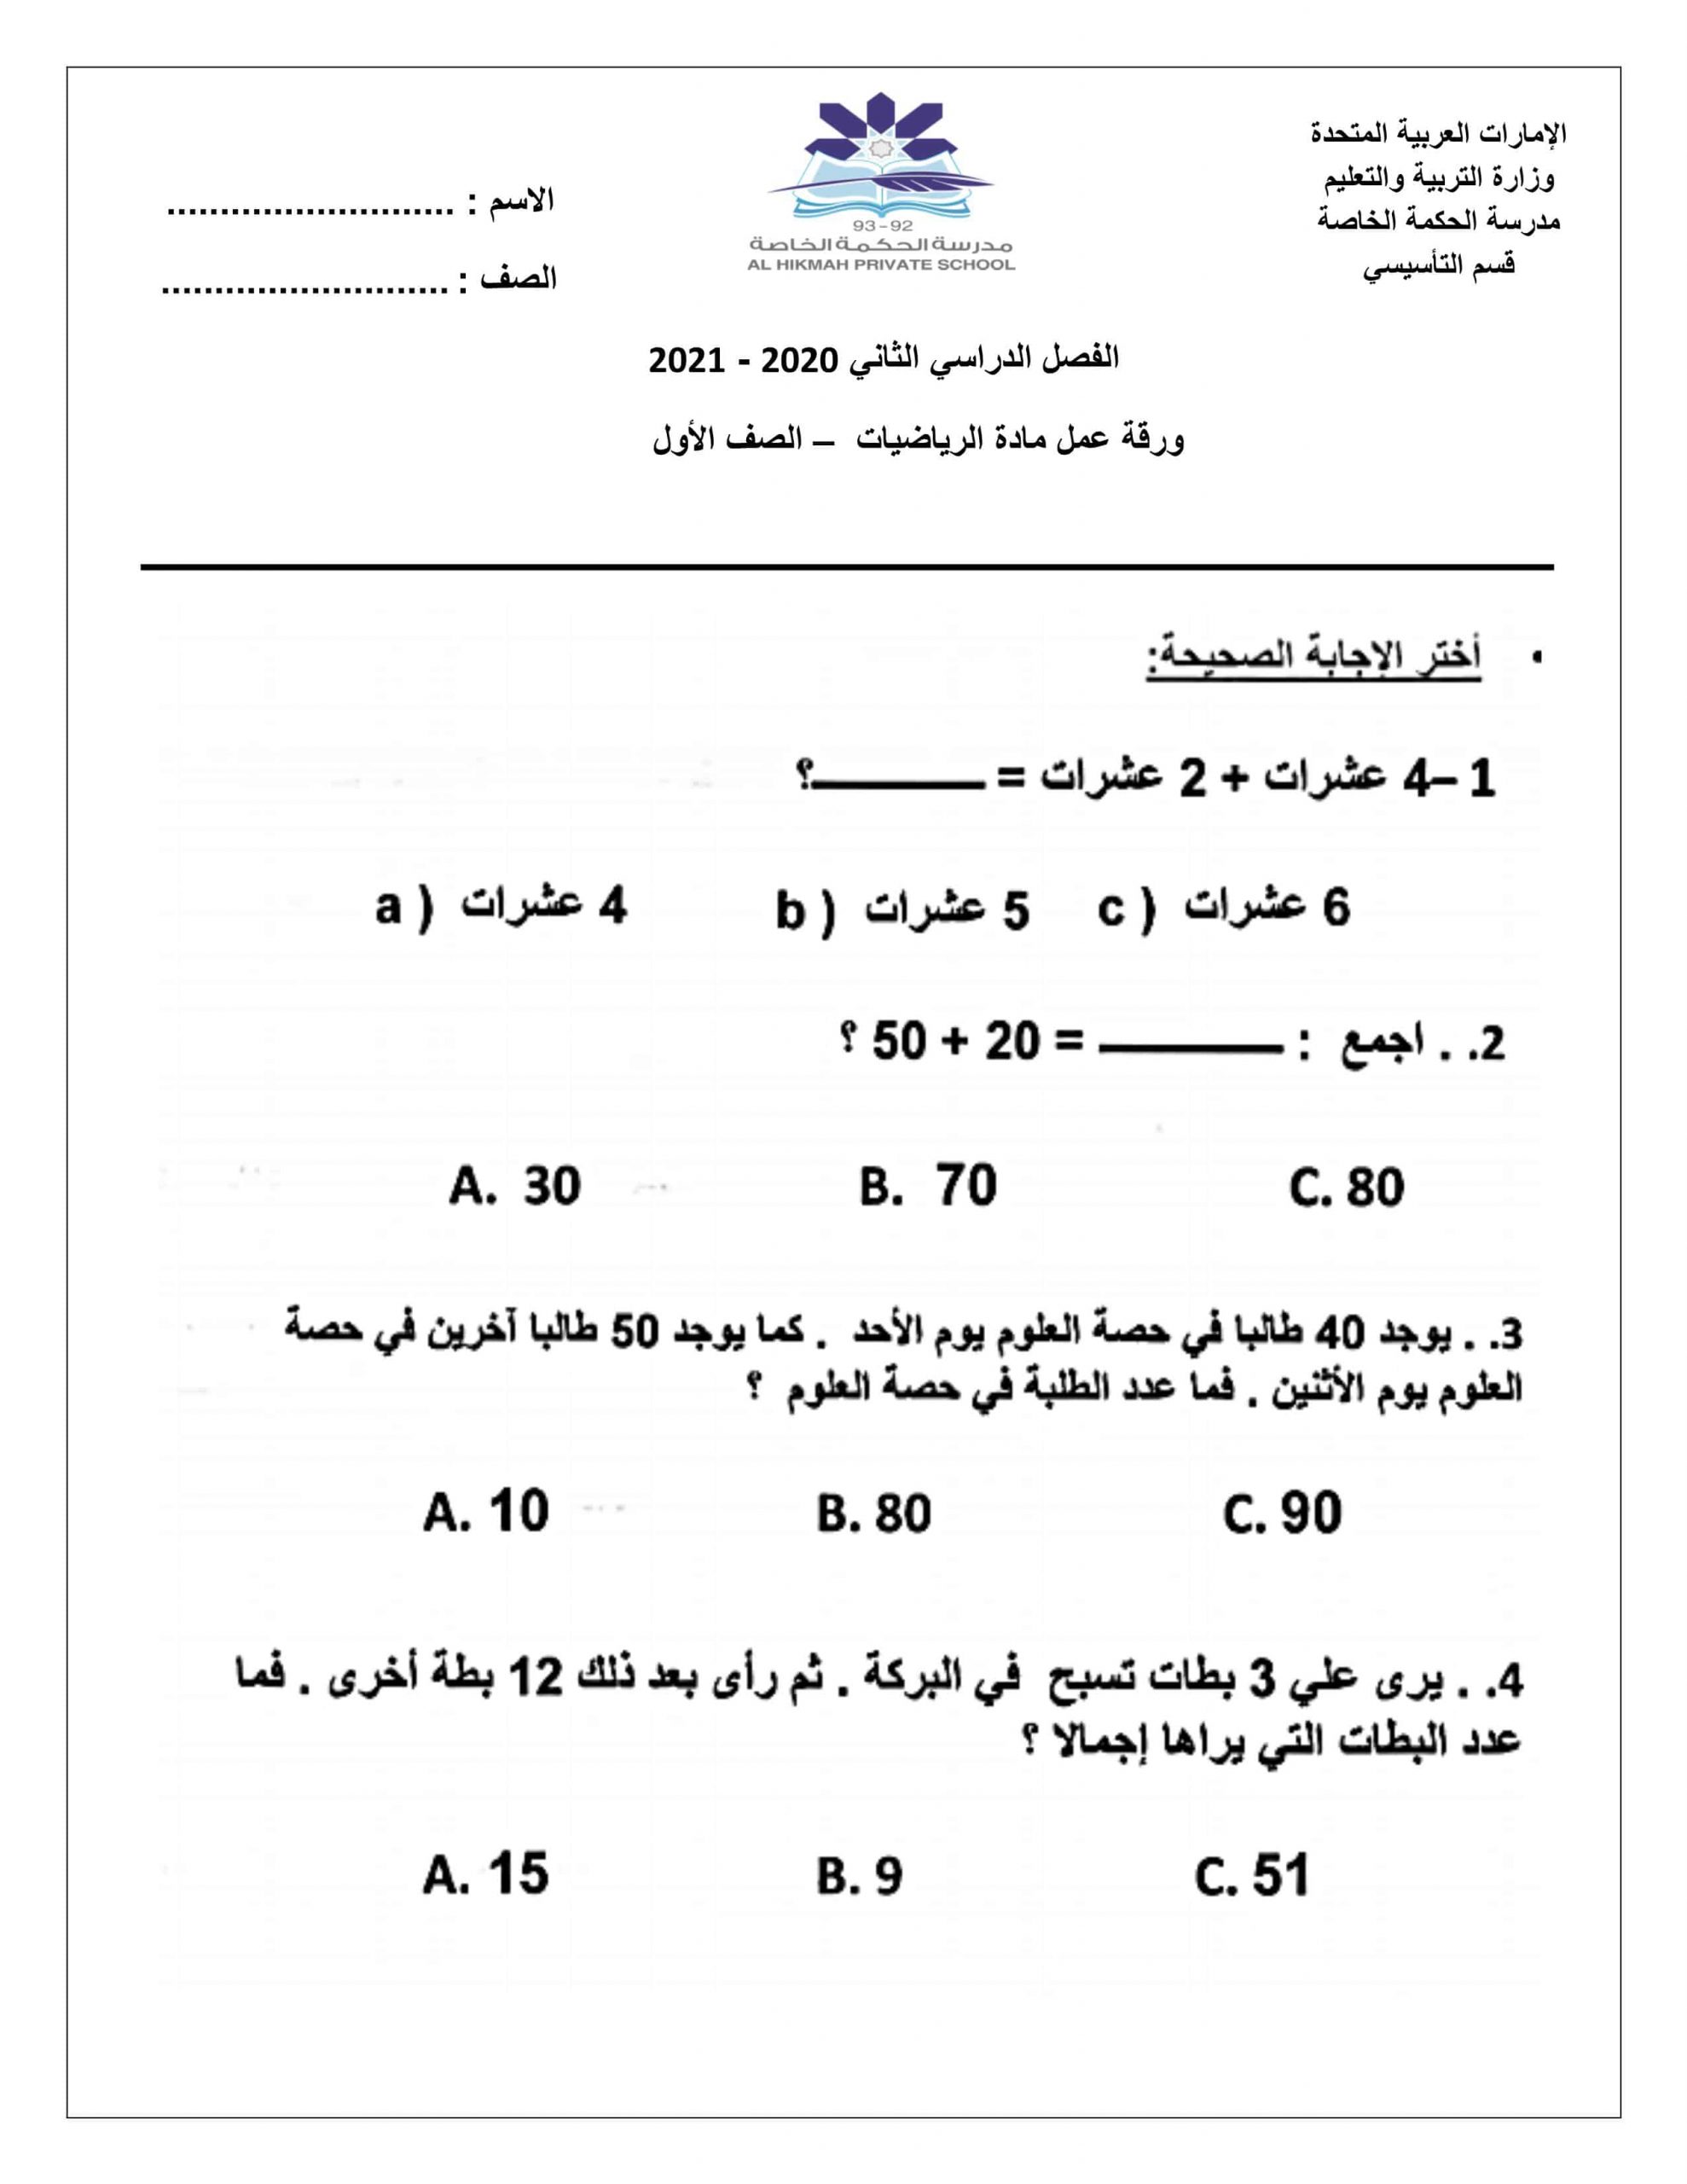 ورقة عمل الفصل الدراسي الثاني الصف الأول مادة الرياضيات المتكاملة